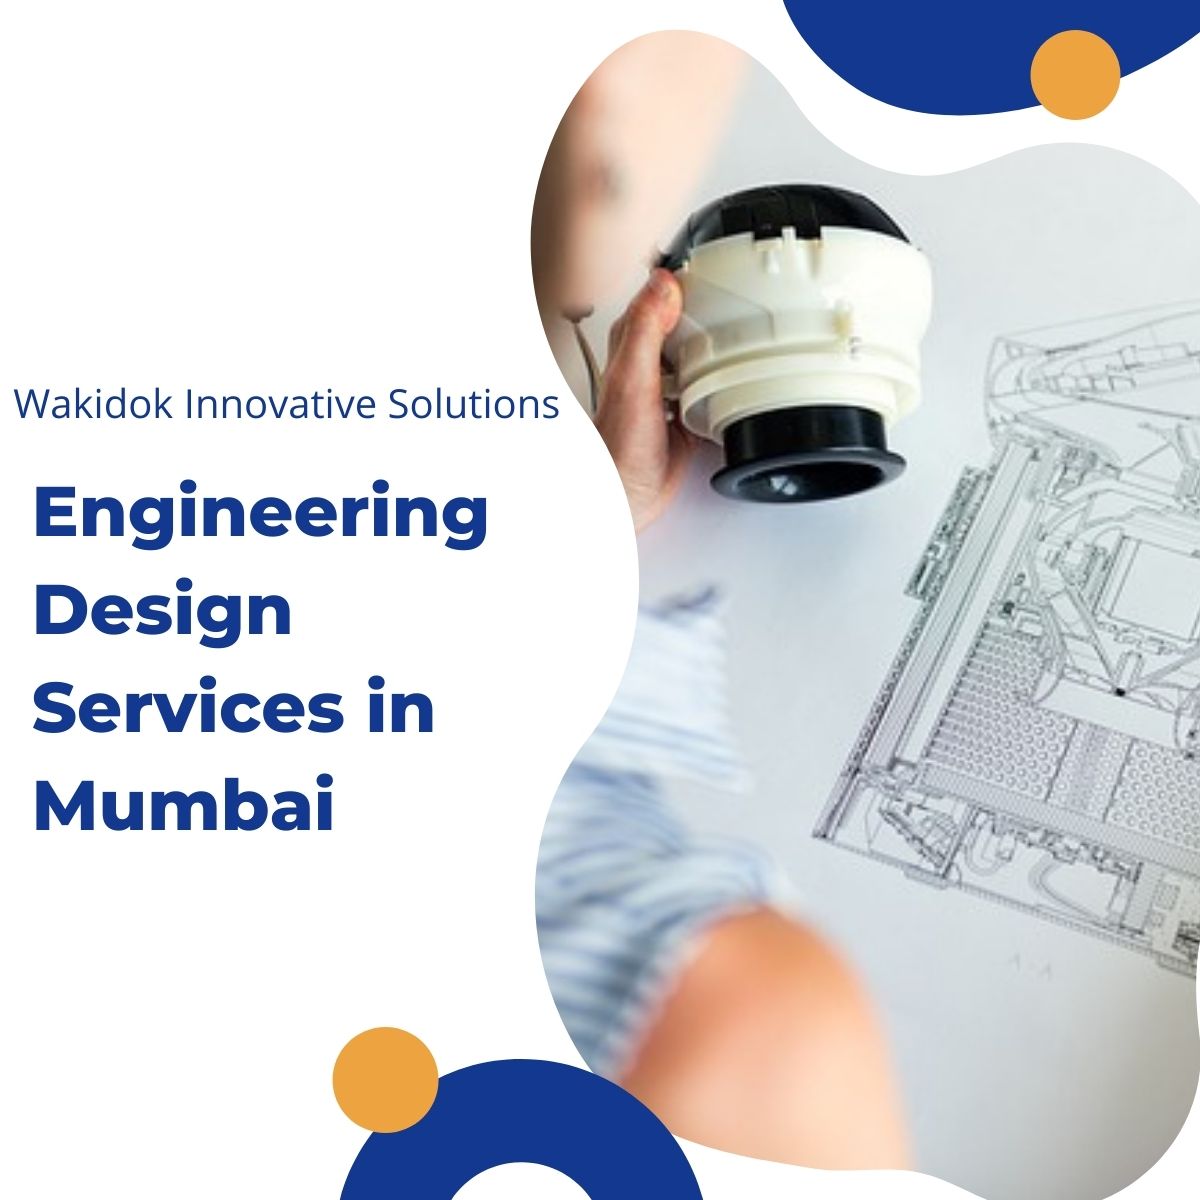 Engineering Design Services in Mumbai